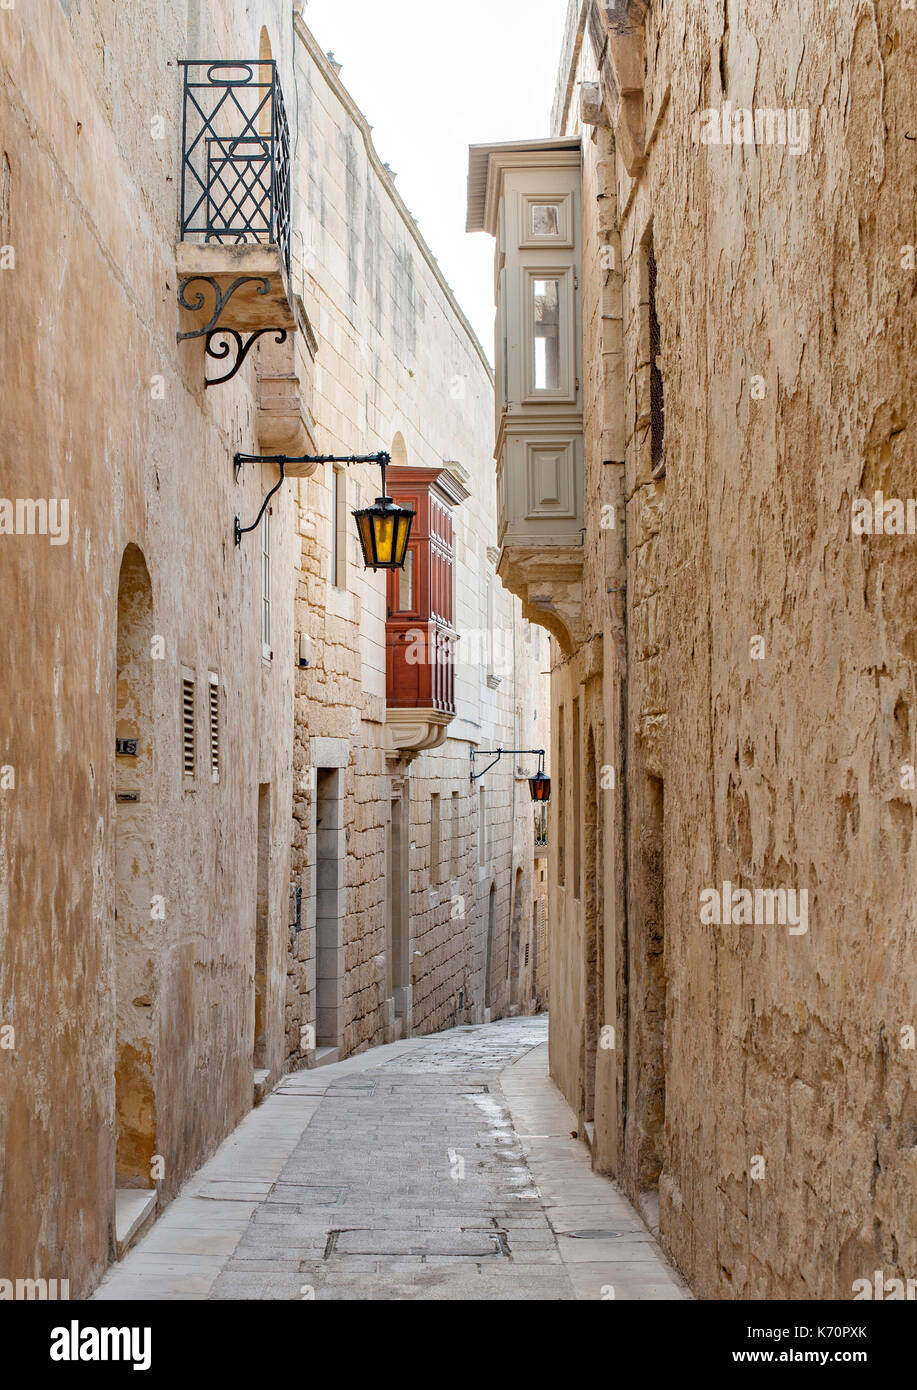 Les rues étroites de la ville fortifiée de Mdina (Città Vecchia ou Città Notabile) à Malte. Banque D'Images